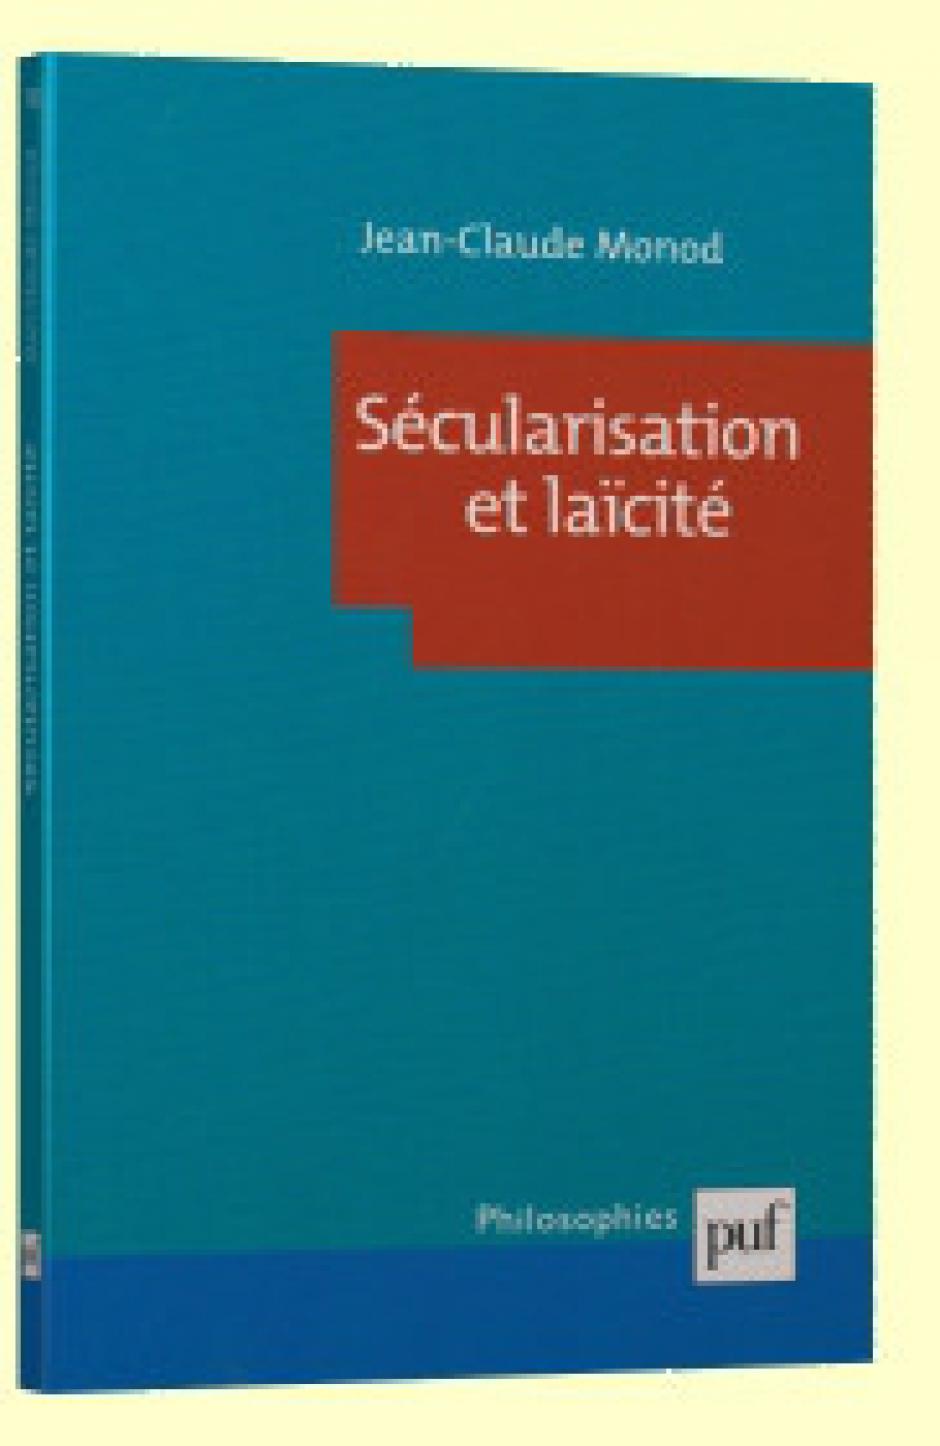 Islam et sécularisation : pour une approche non essentialiste, Jean-Claude Monod*